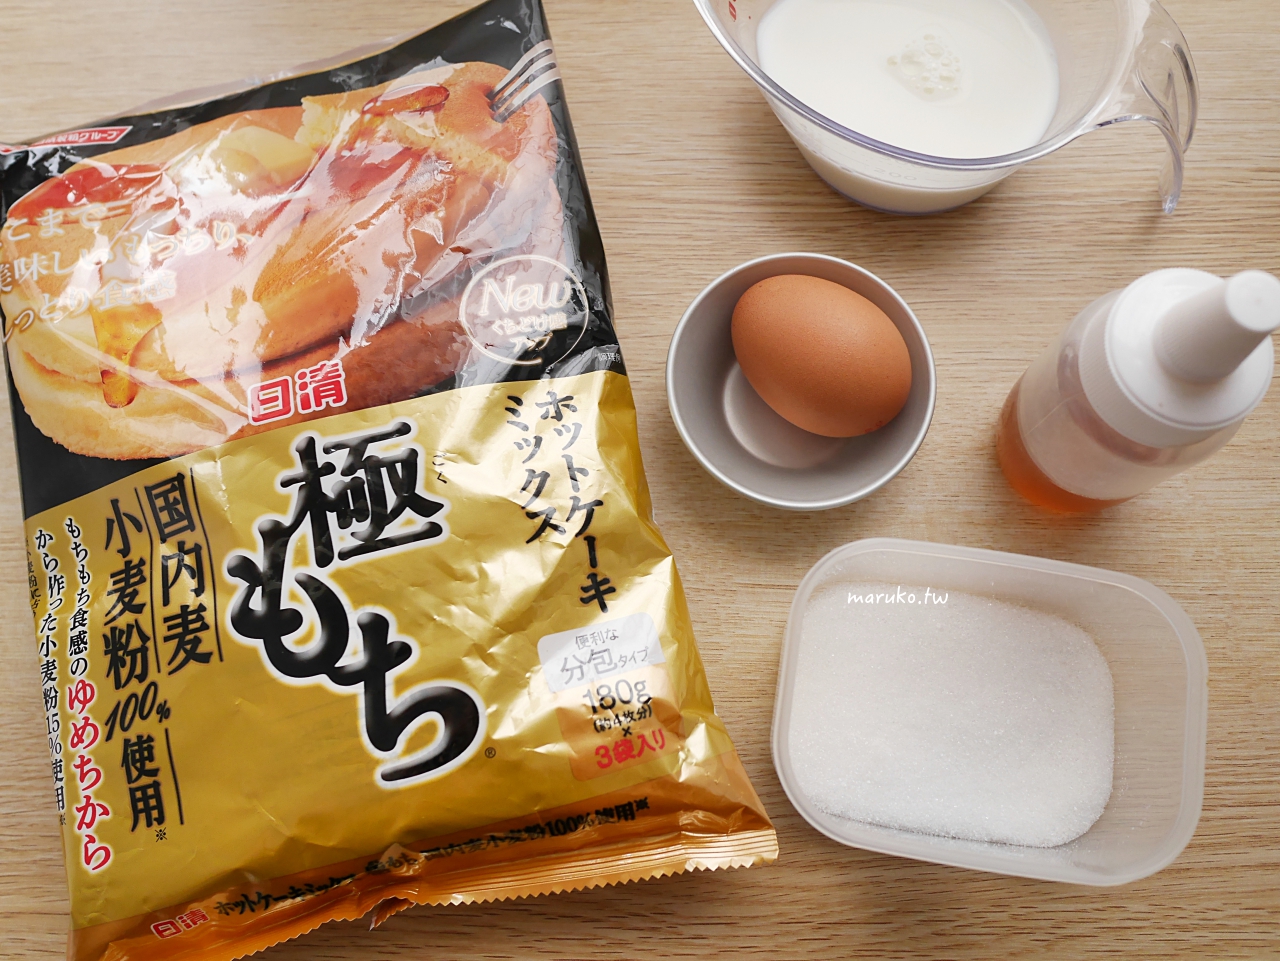 【食譜】7種鬆餅粉可變化的食譜包含餅乾、甜甜圈、韓國起司熱狗、咖哩麵包 @Maruko與美食有個約會